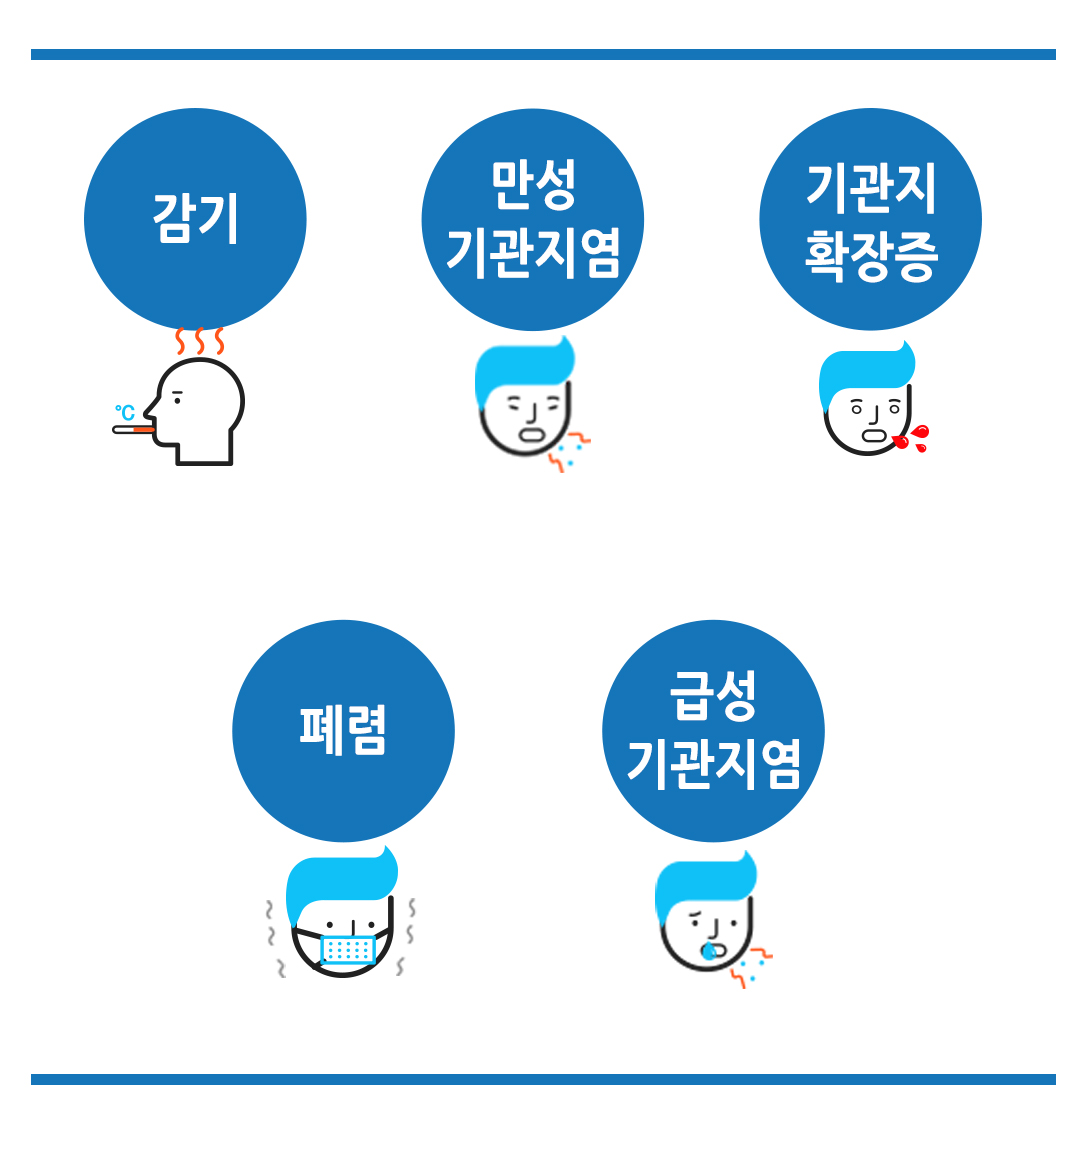 한국한의원, 한국한의원 호흡기 클리닉, 치료범위, 급성 기관지염, 폐렴